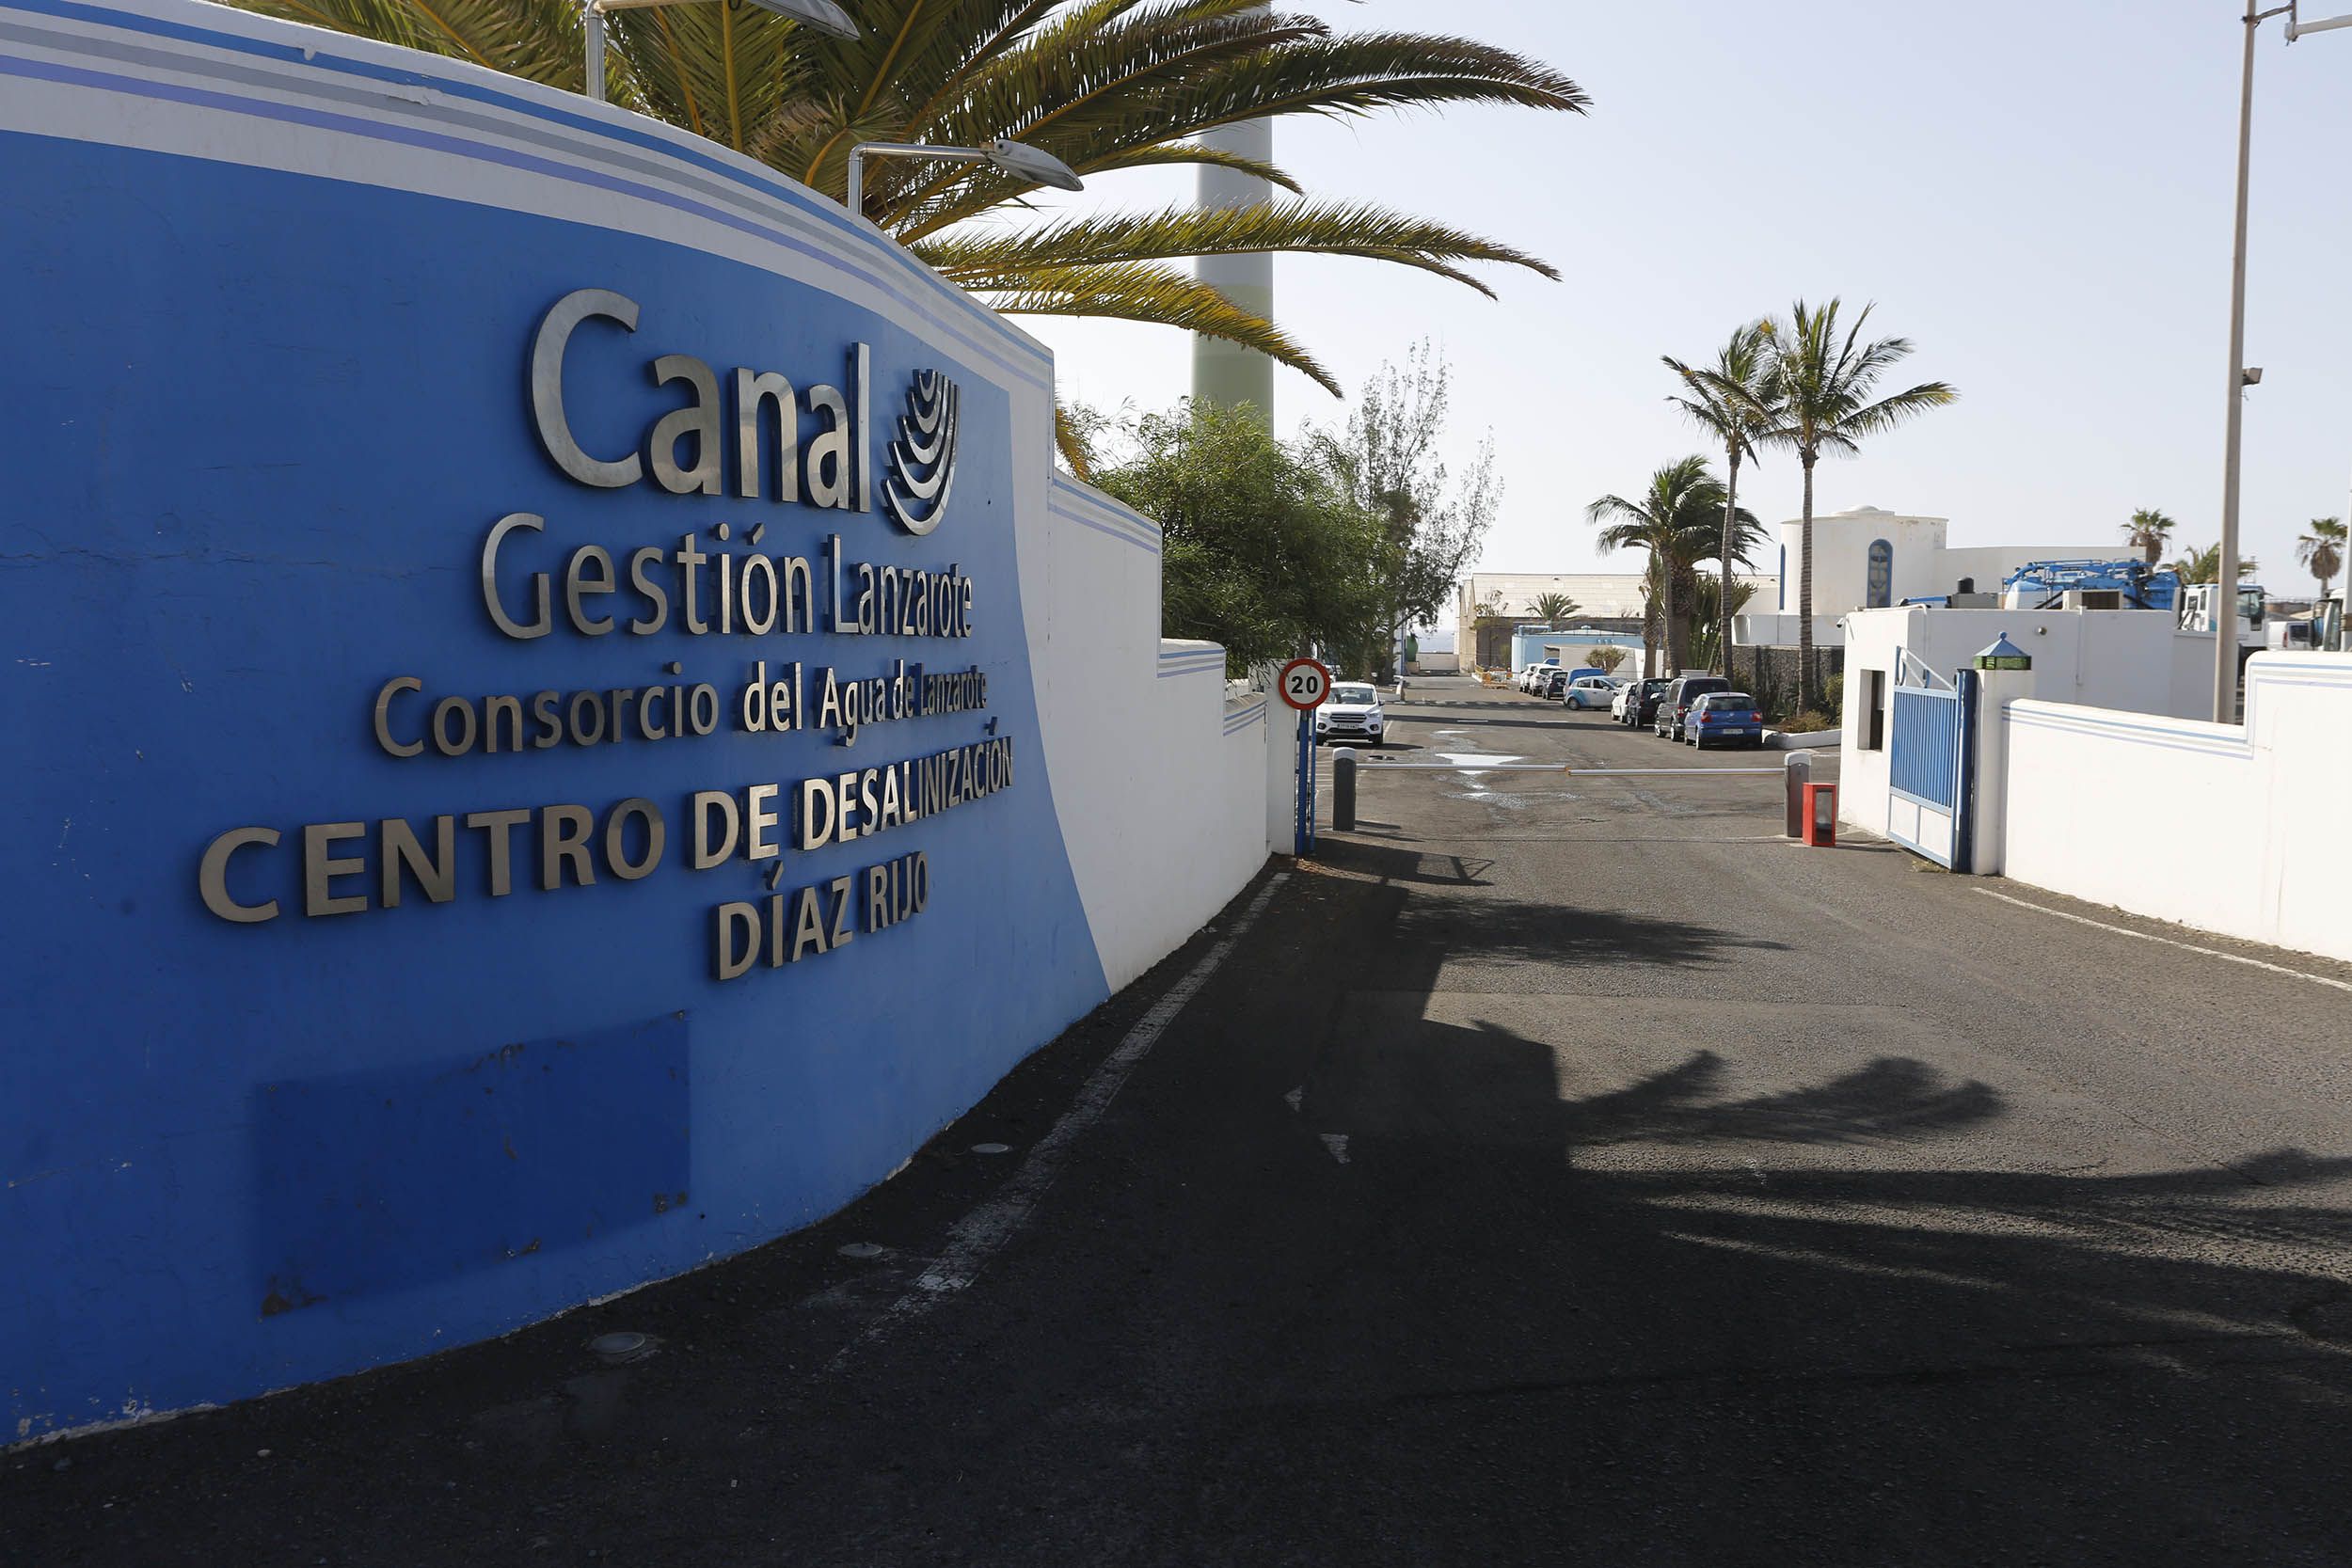 Oficina central de Canal Gestión, empresa encargada de la gestión del agua en Lanzarote. Foto: José Luis Carrasco.